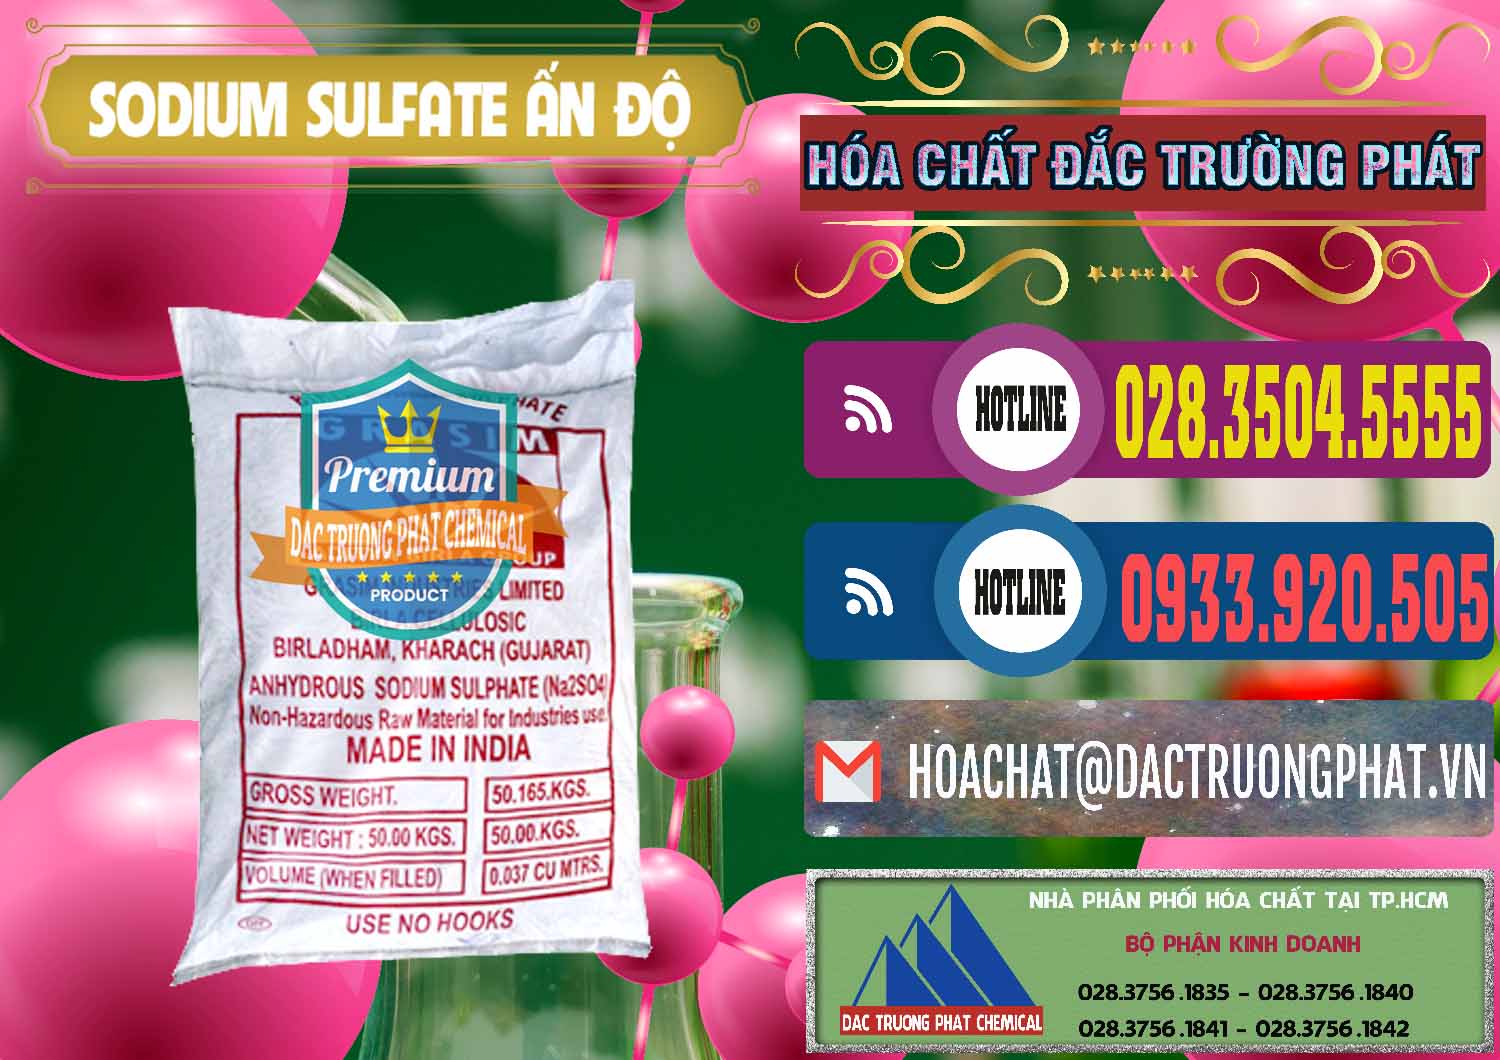 Đơn vị chuyên bán - phân phối Sodium Sulphate - Muối Sunfat Na2SO4 Aditya Birla Grasim Ấn Độ India - 0462 - Cty kinh doanh & phân phối hóa chất tại TP.HCM - muabanhoachat.com.vn